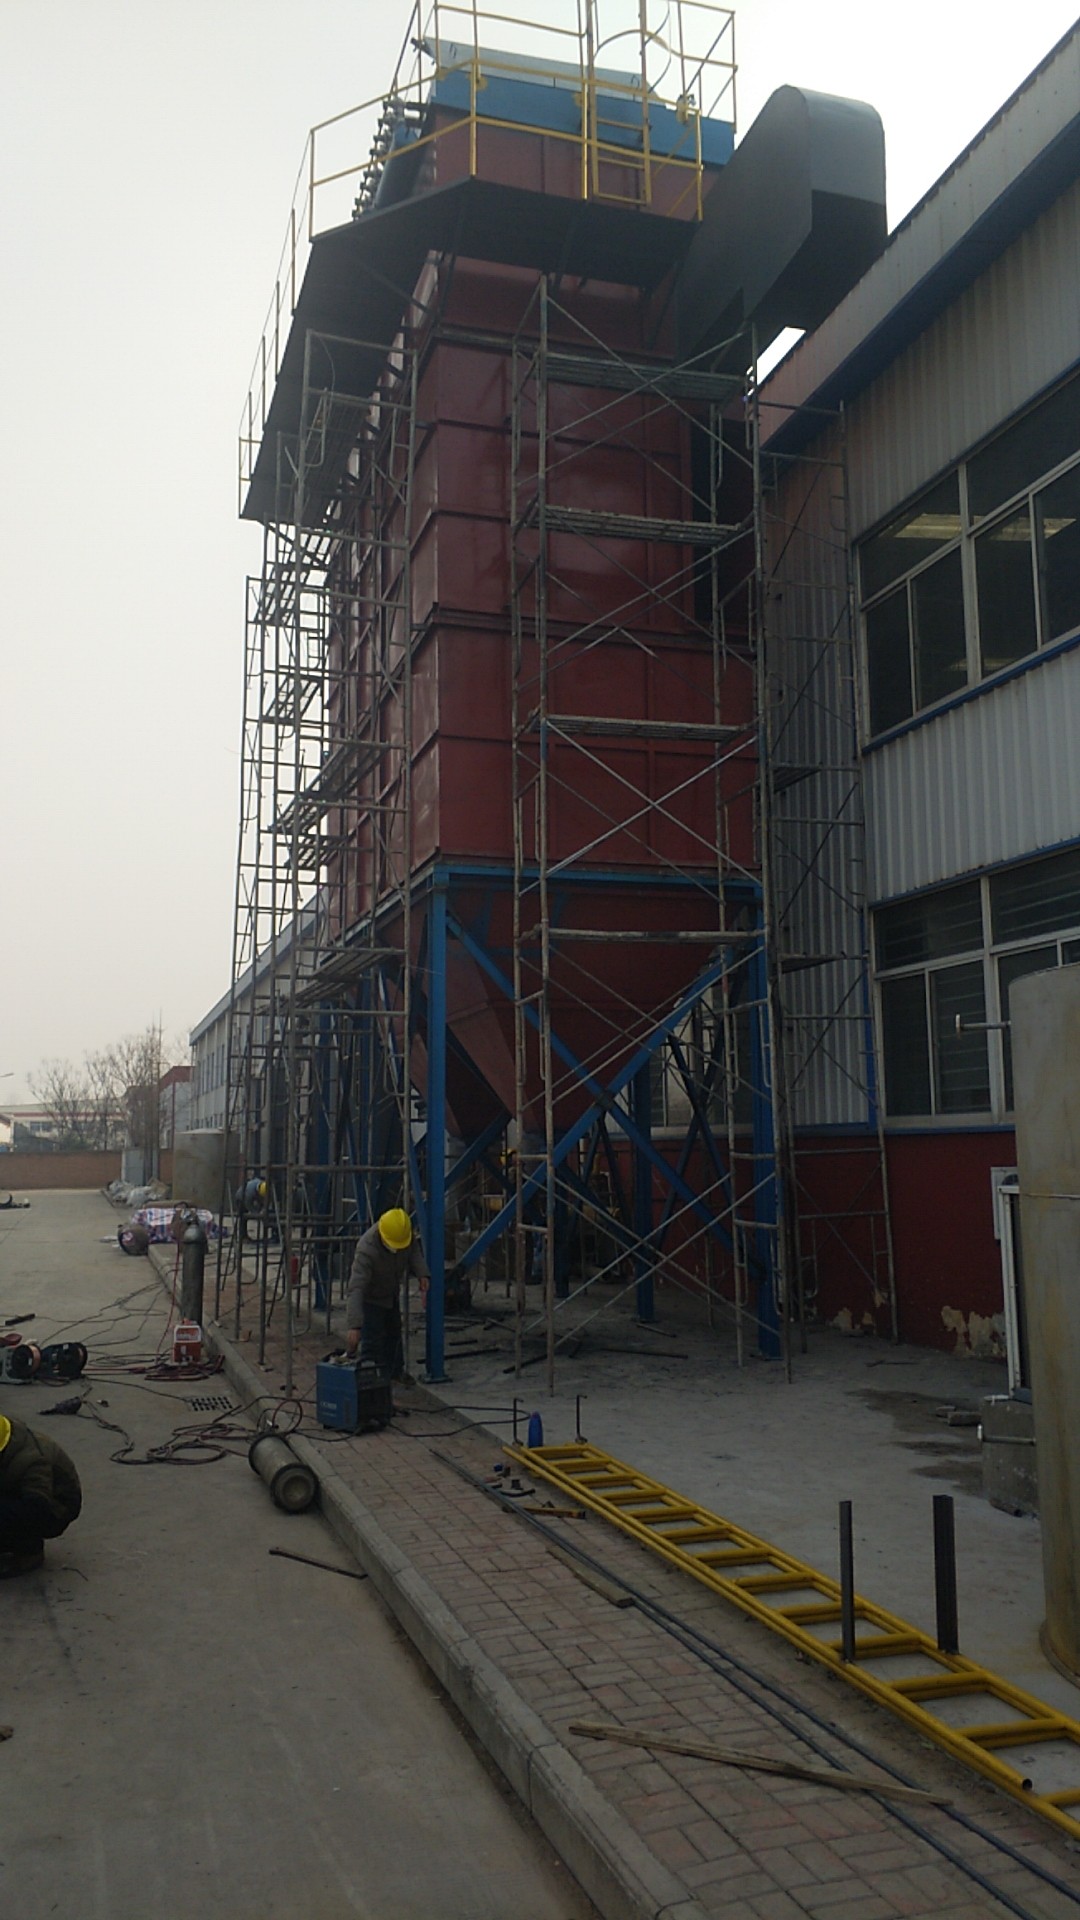 中钢洛阳耐火材料研究院脱硝改造工程最新进展